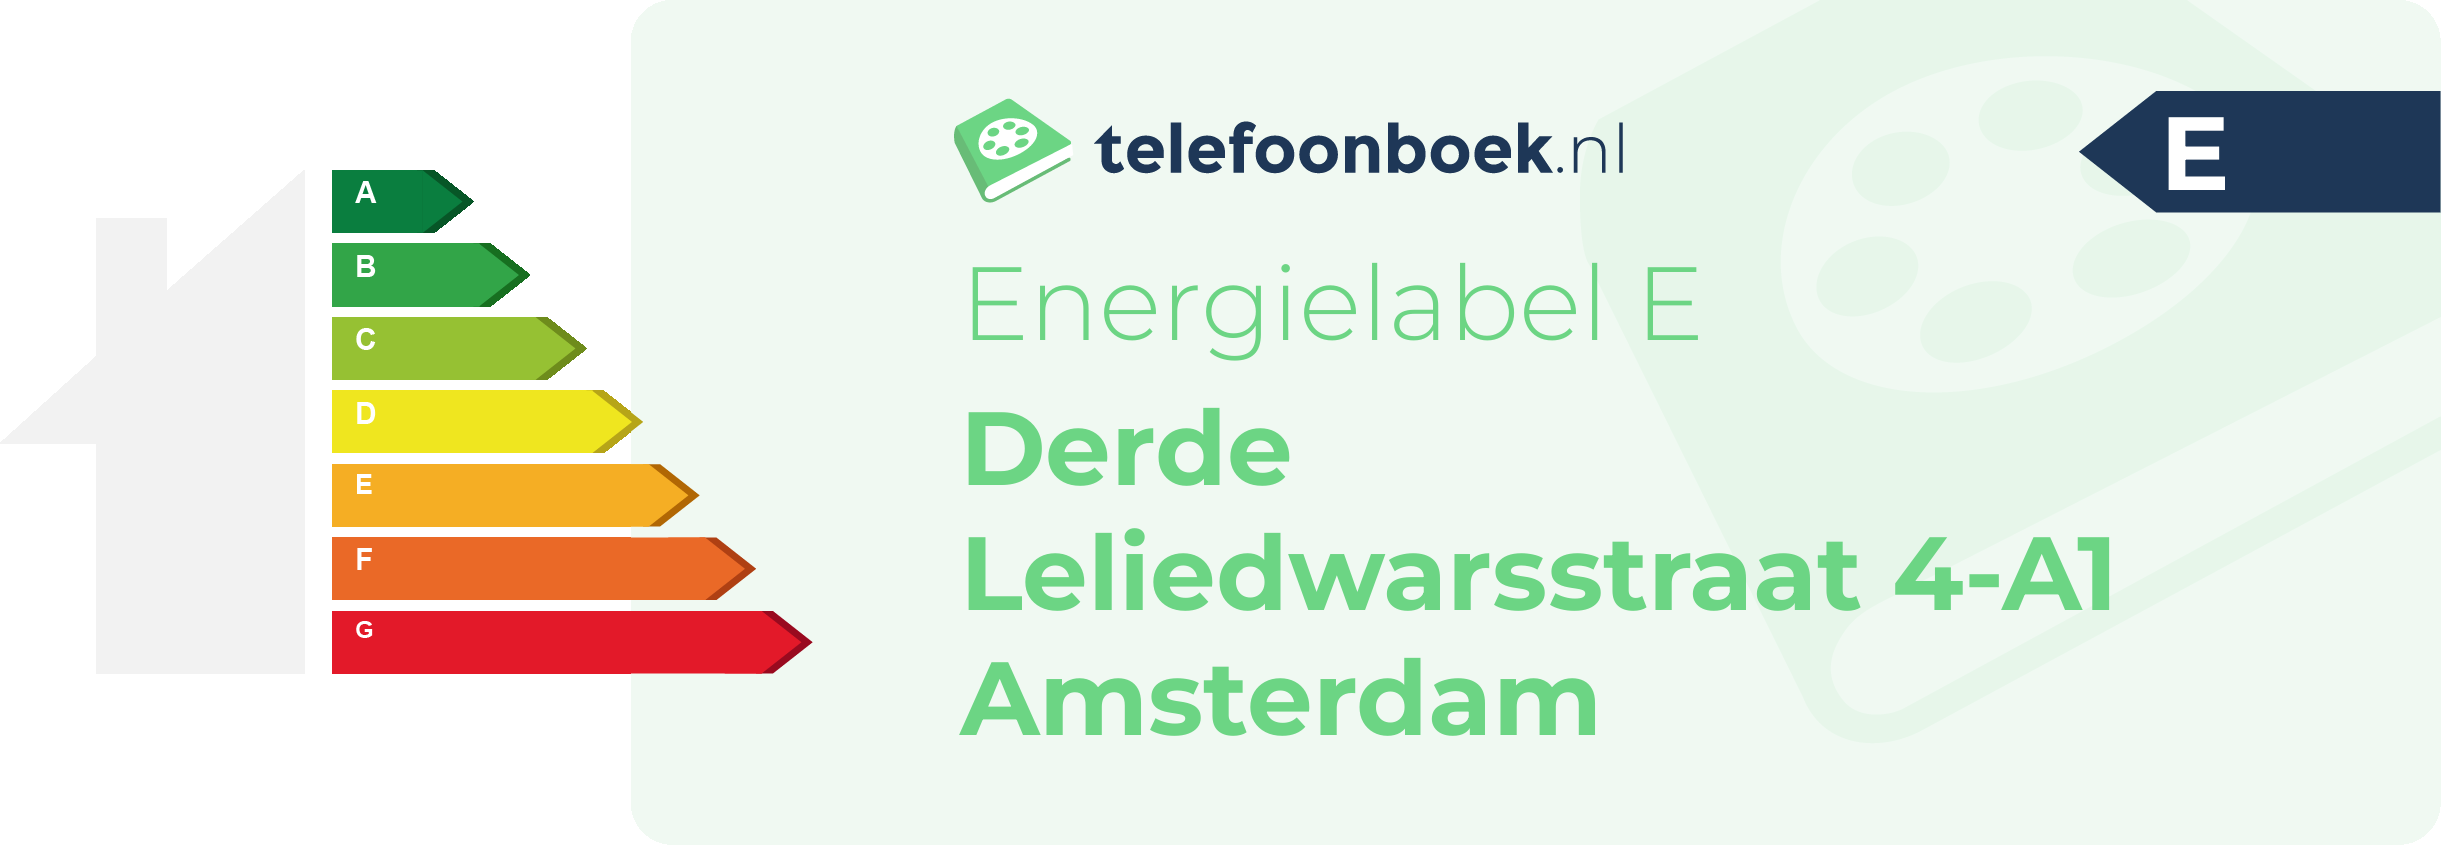 Energielabel Derde Leliedwarsstraat 4-A1 Amsterdam